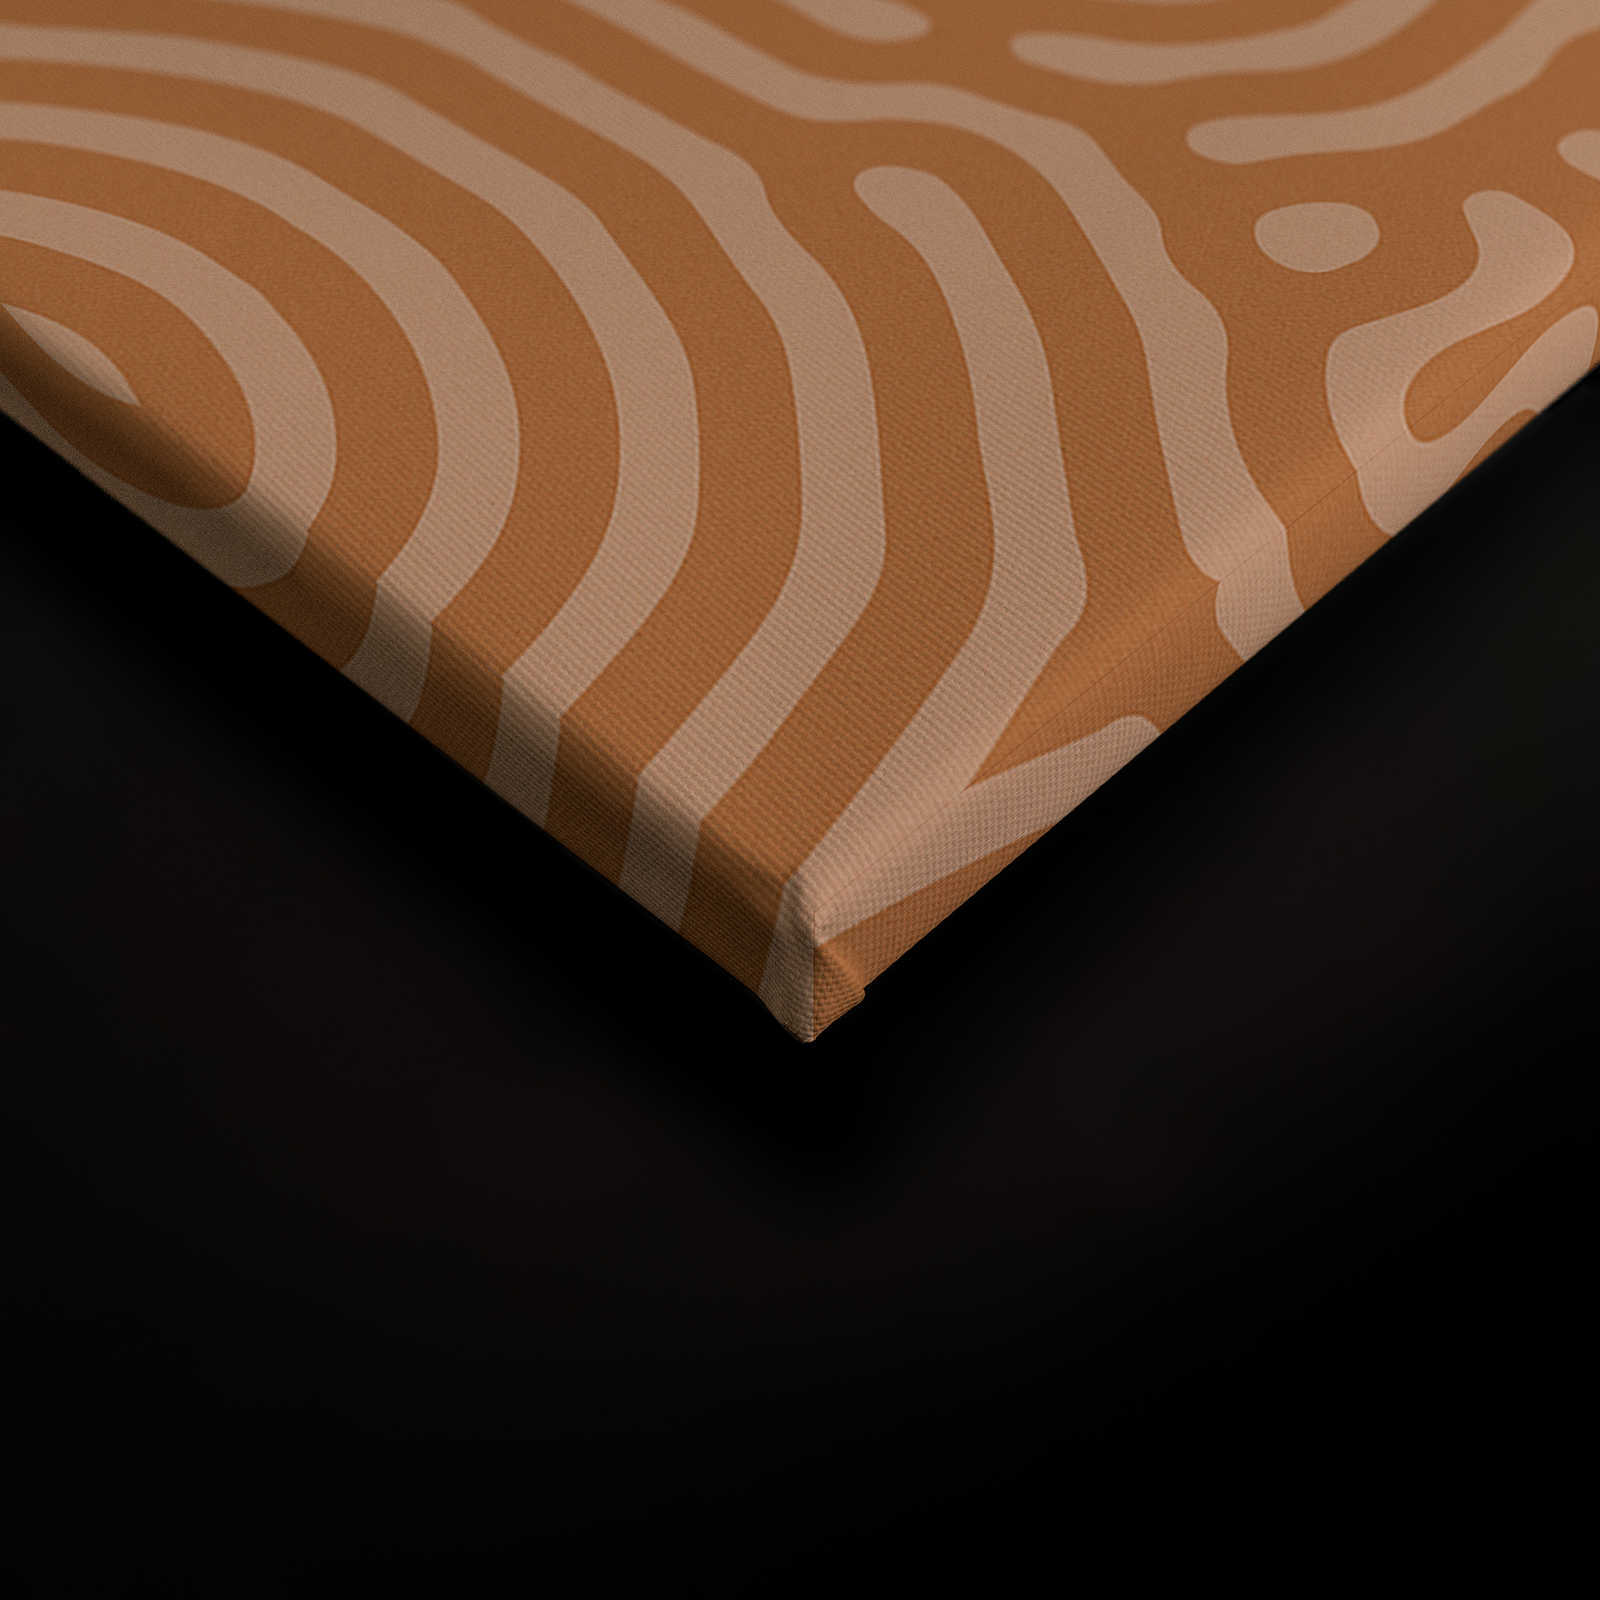             Sahel 2 - Toile orange motif labyrinthe terre cuite - 1,20 m x 0,80 m
        